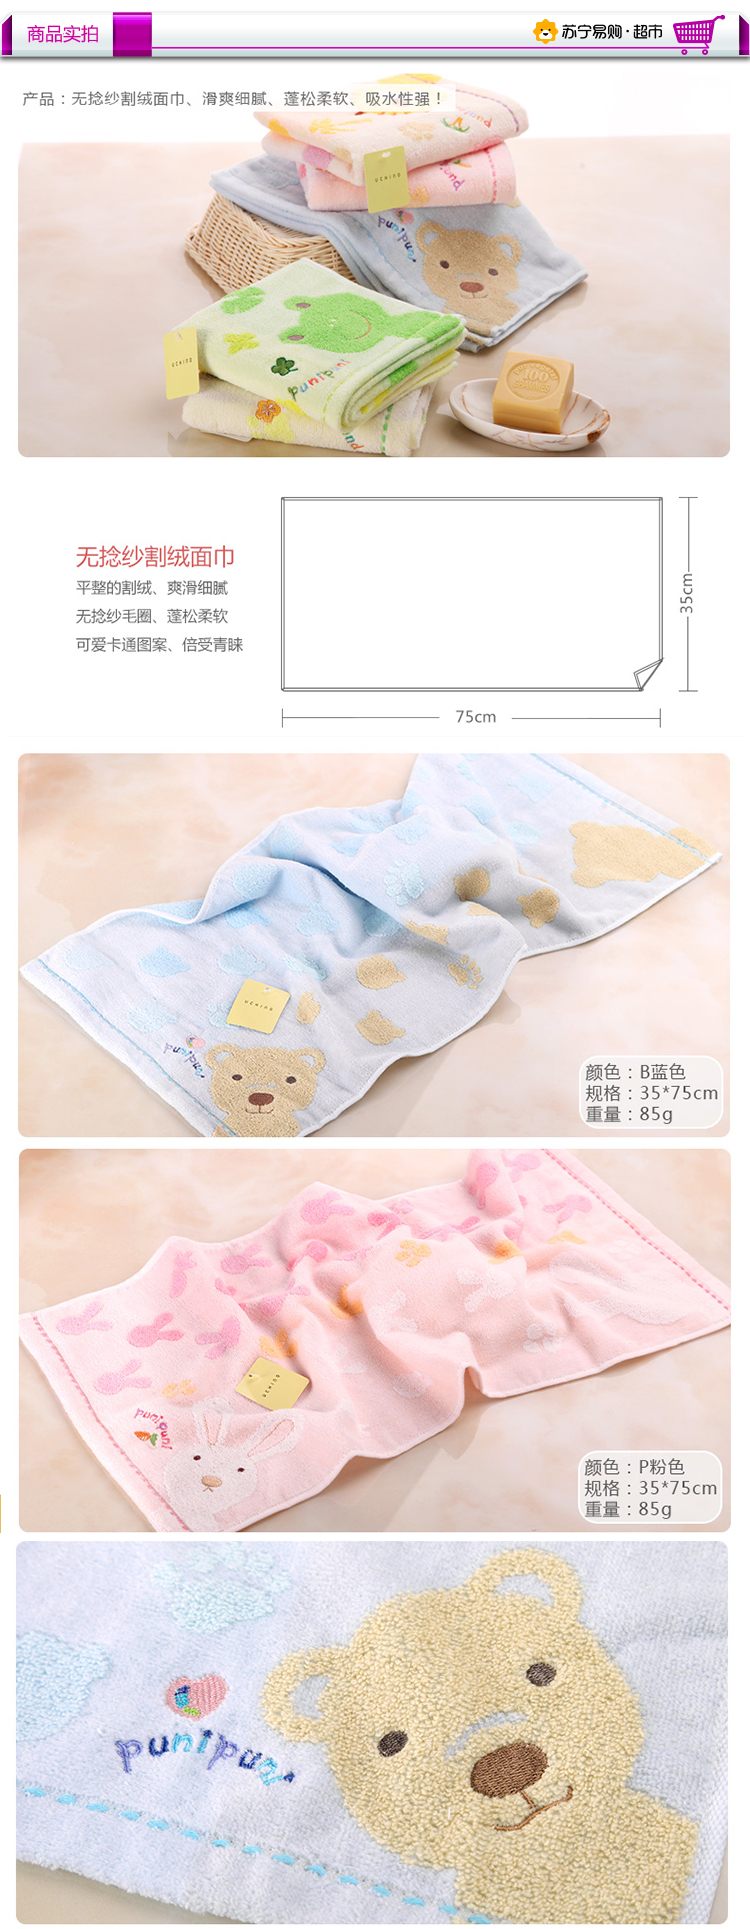 内野puni puni可爱动物无捻面巾 纯棉儿童毛巾 蒸汽割绒 可爱卡通 35*75cm 粉色